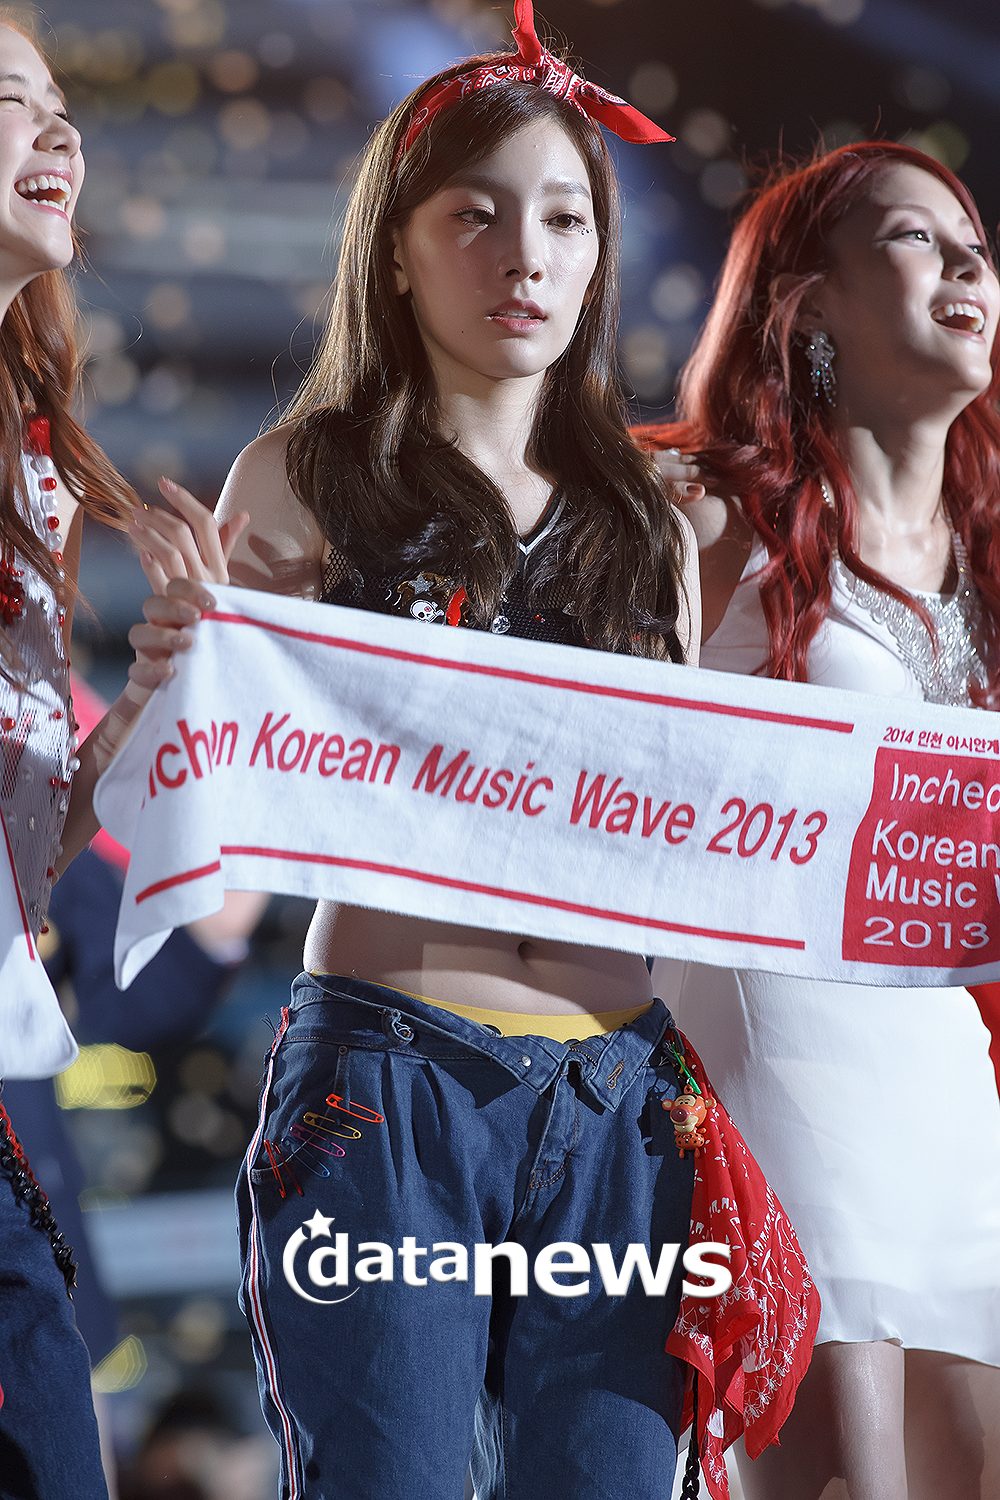 [PIC][01-09-2013]Hình ảnh mới nhất từ "Incheon Korean Music Wave 2013" của SNSD và MC YulTi vào tối nay - Page 2 234F8F4C52238E38151714